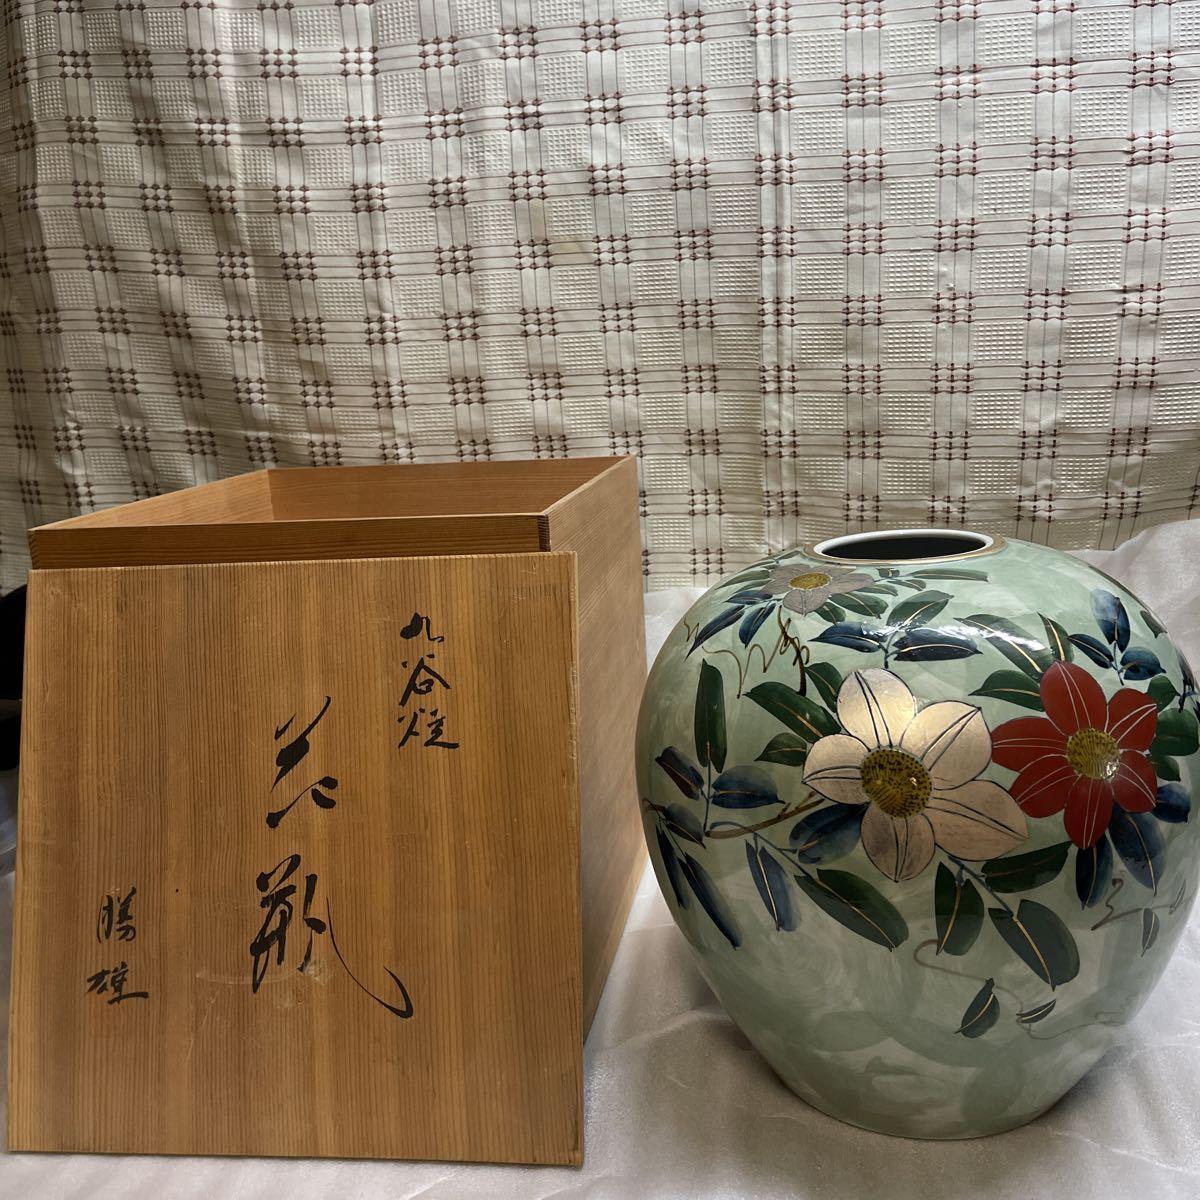 Ваза для посуды Кутани Кацуо Железная проволока зеленого цвета с деревянной коробкой Кацуо Миура Ваза для цветов [Красота] Анонимная доставка